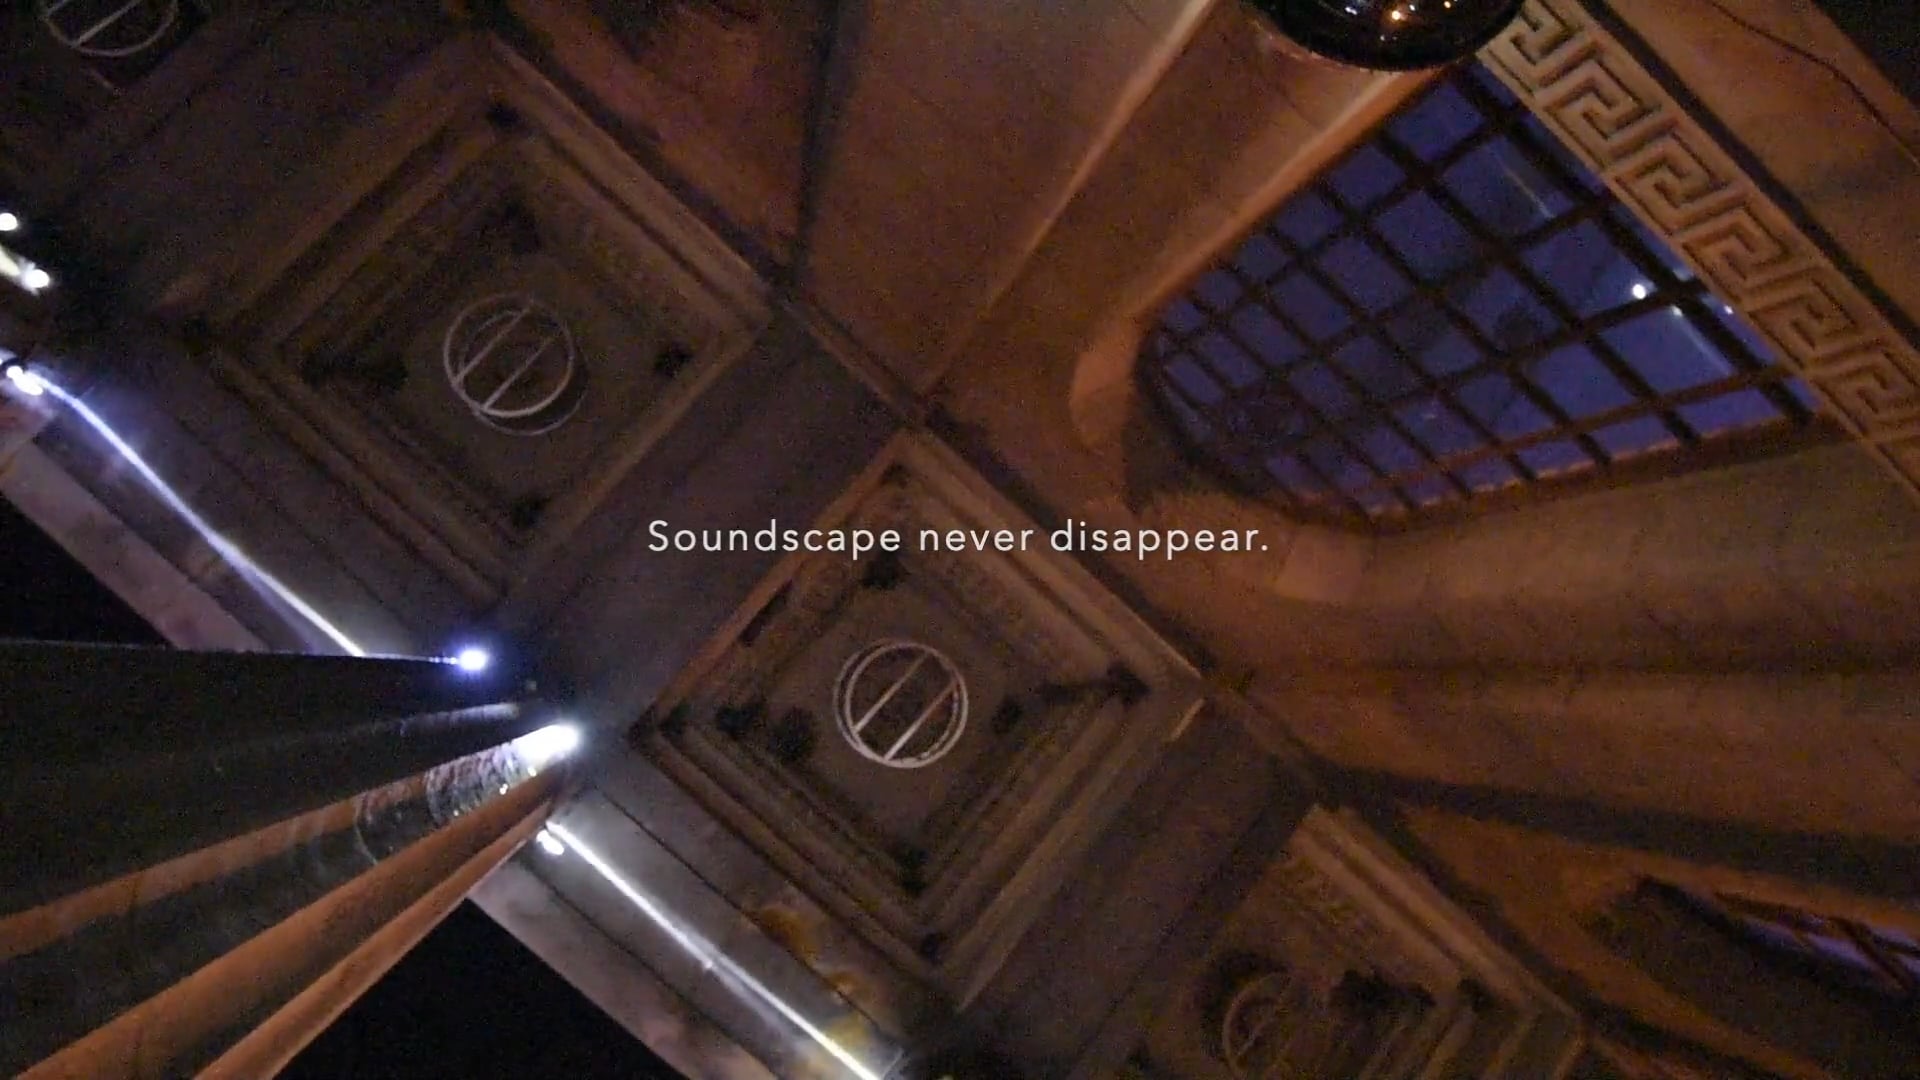 VIVO-Five Soundscape Scenes Collection